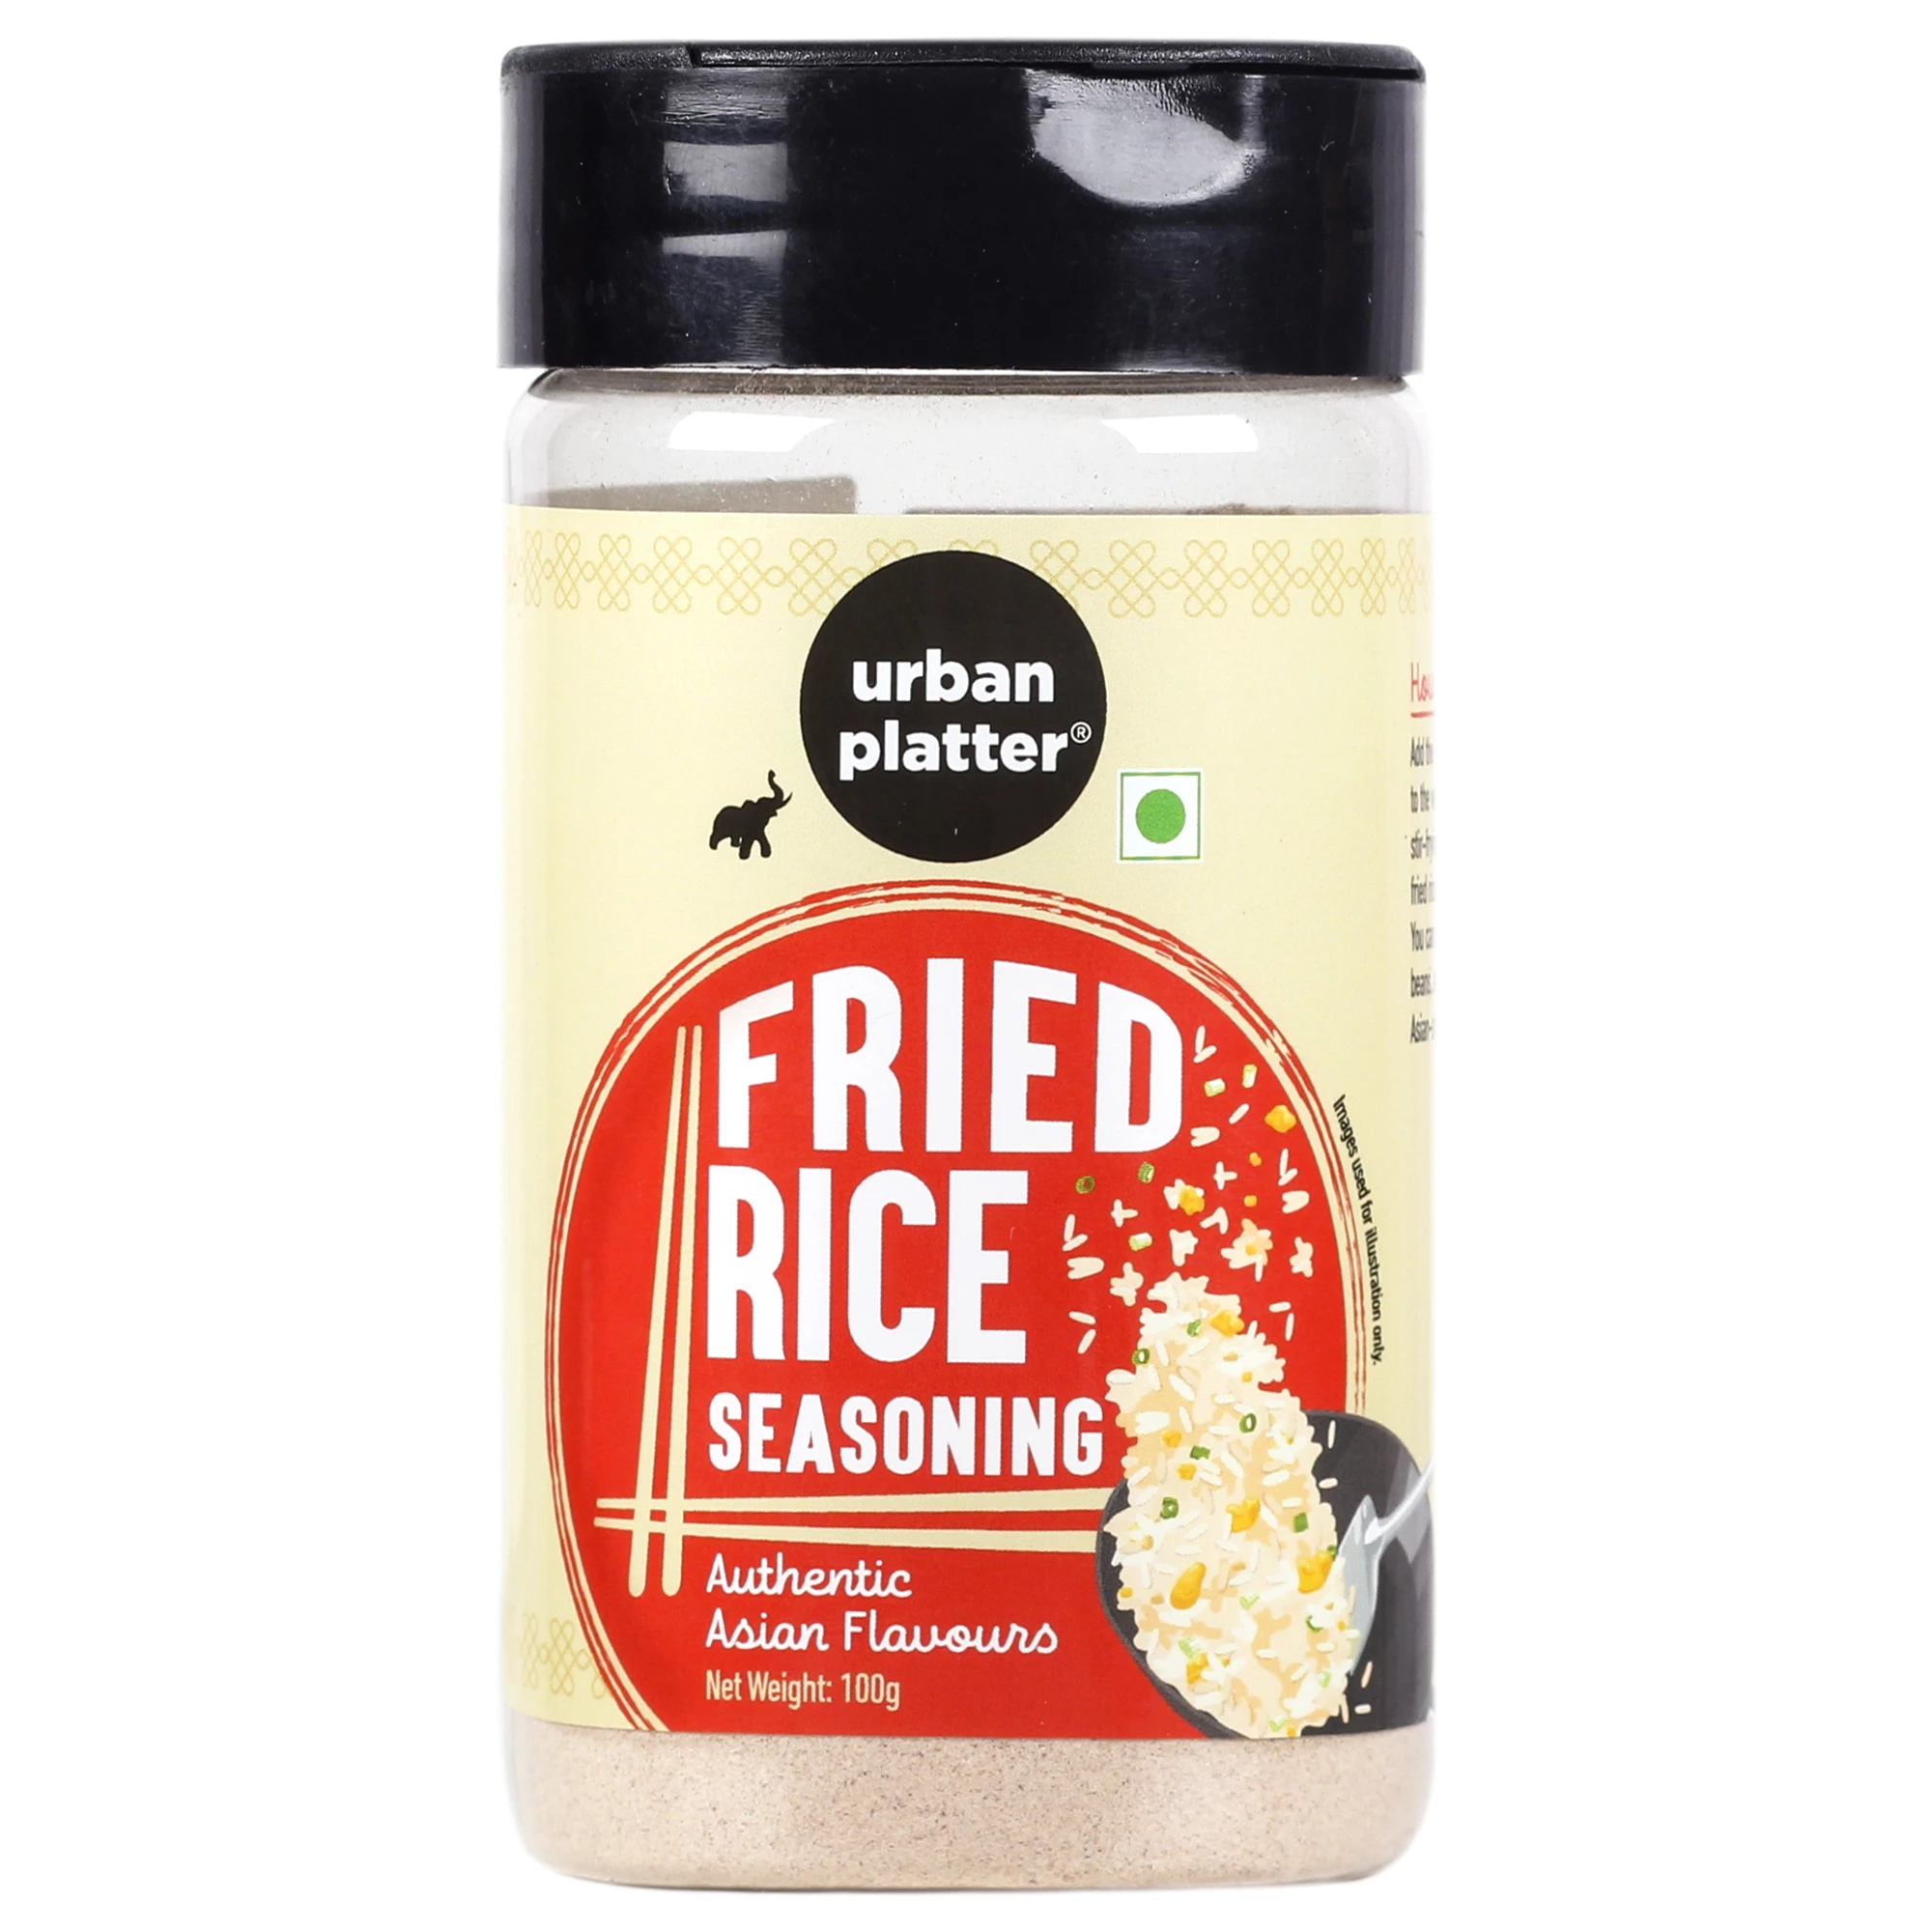  Badia Fried Rice Seasoning 6 oz Pack of 2 : Grocery & Gourmet  Food